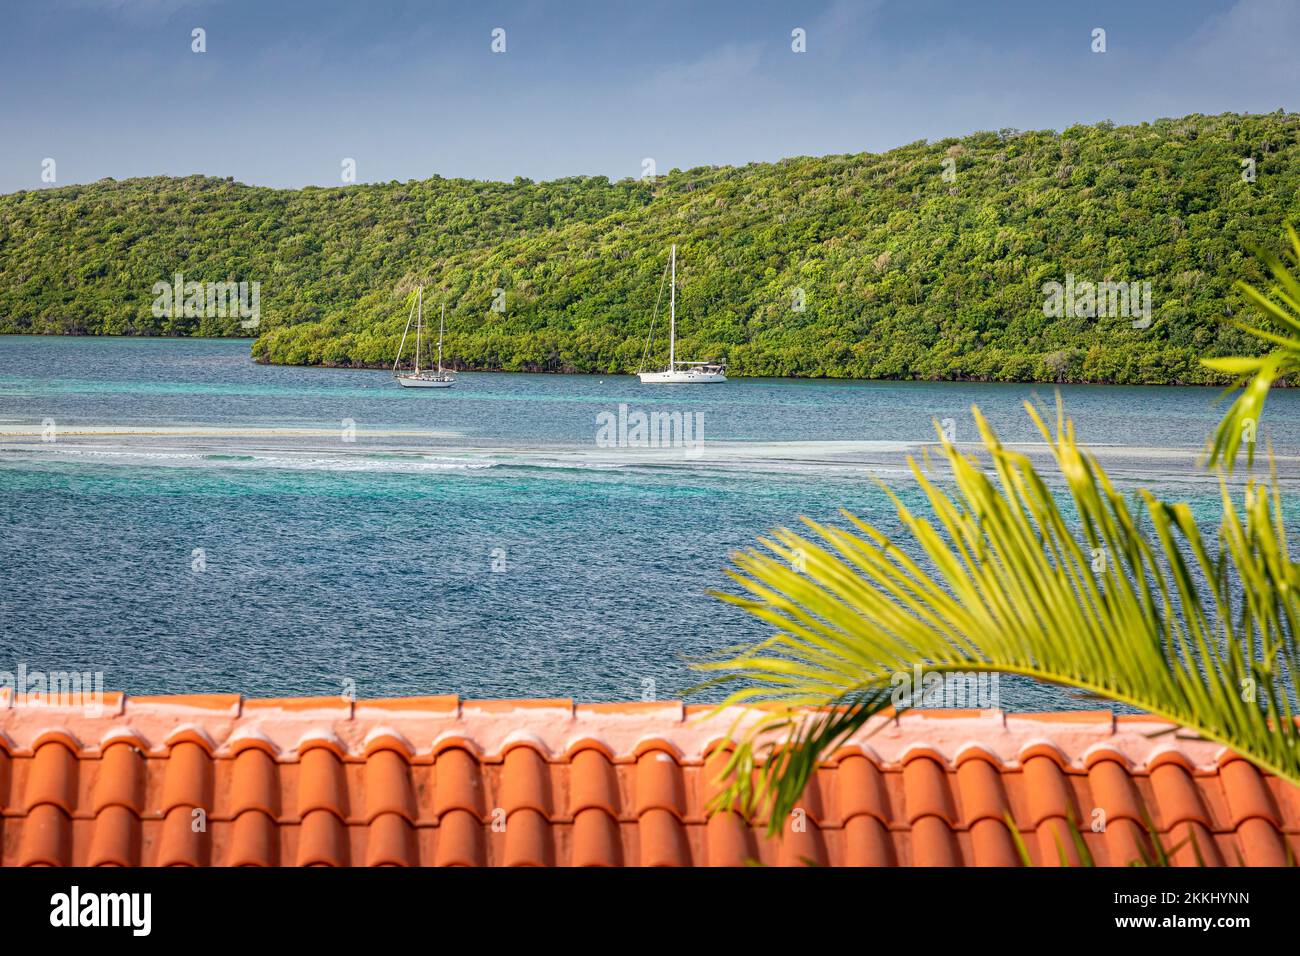 Die Boote legen in Mosquito Bayon an der tropischen karibischen Insel Culebra, Puerto Rico, USA. Stockfoto